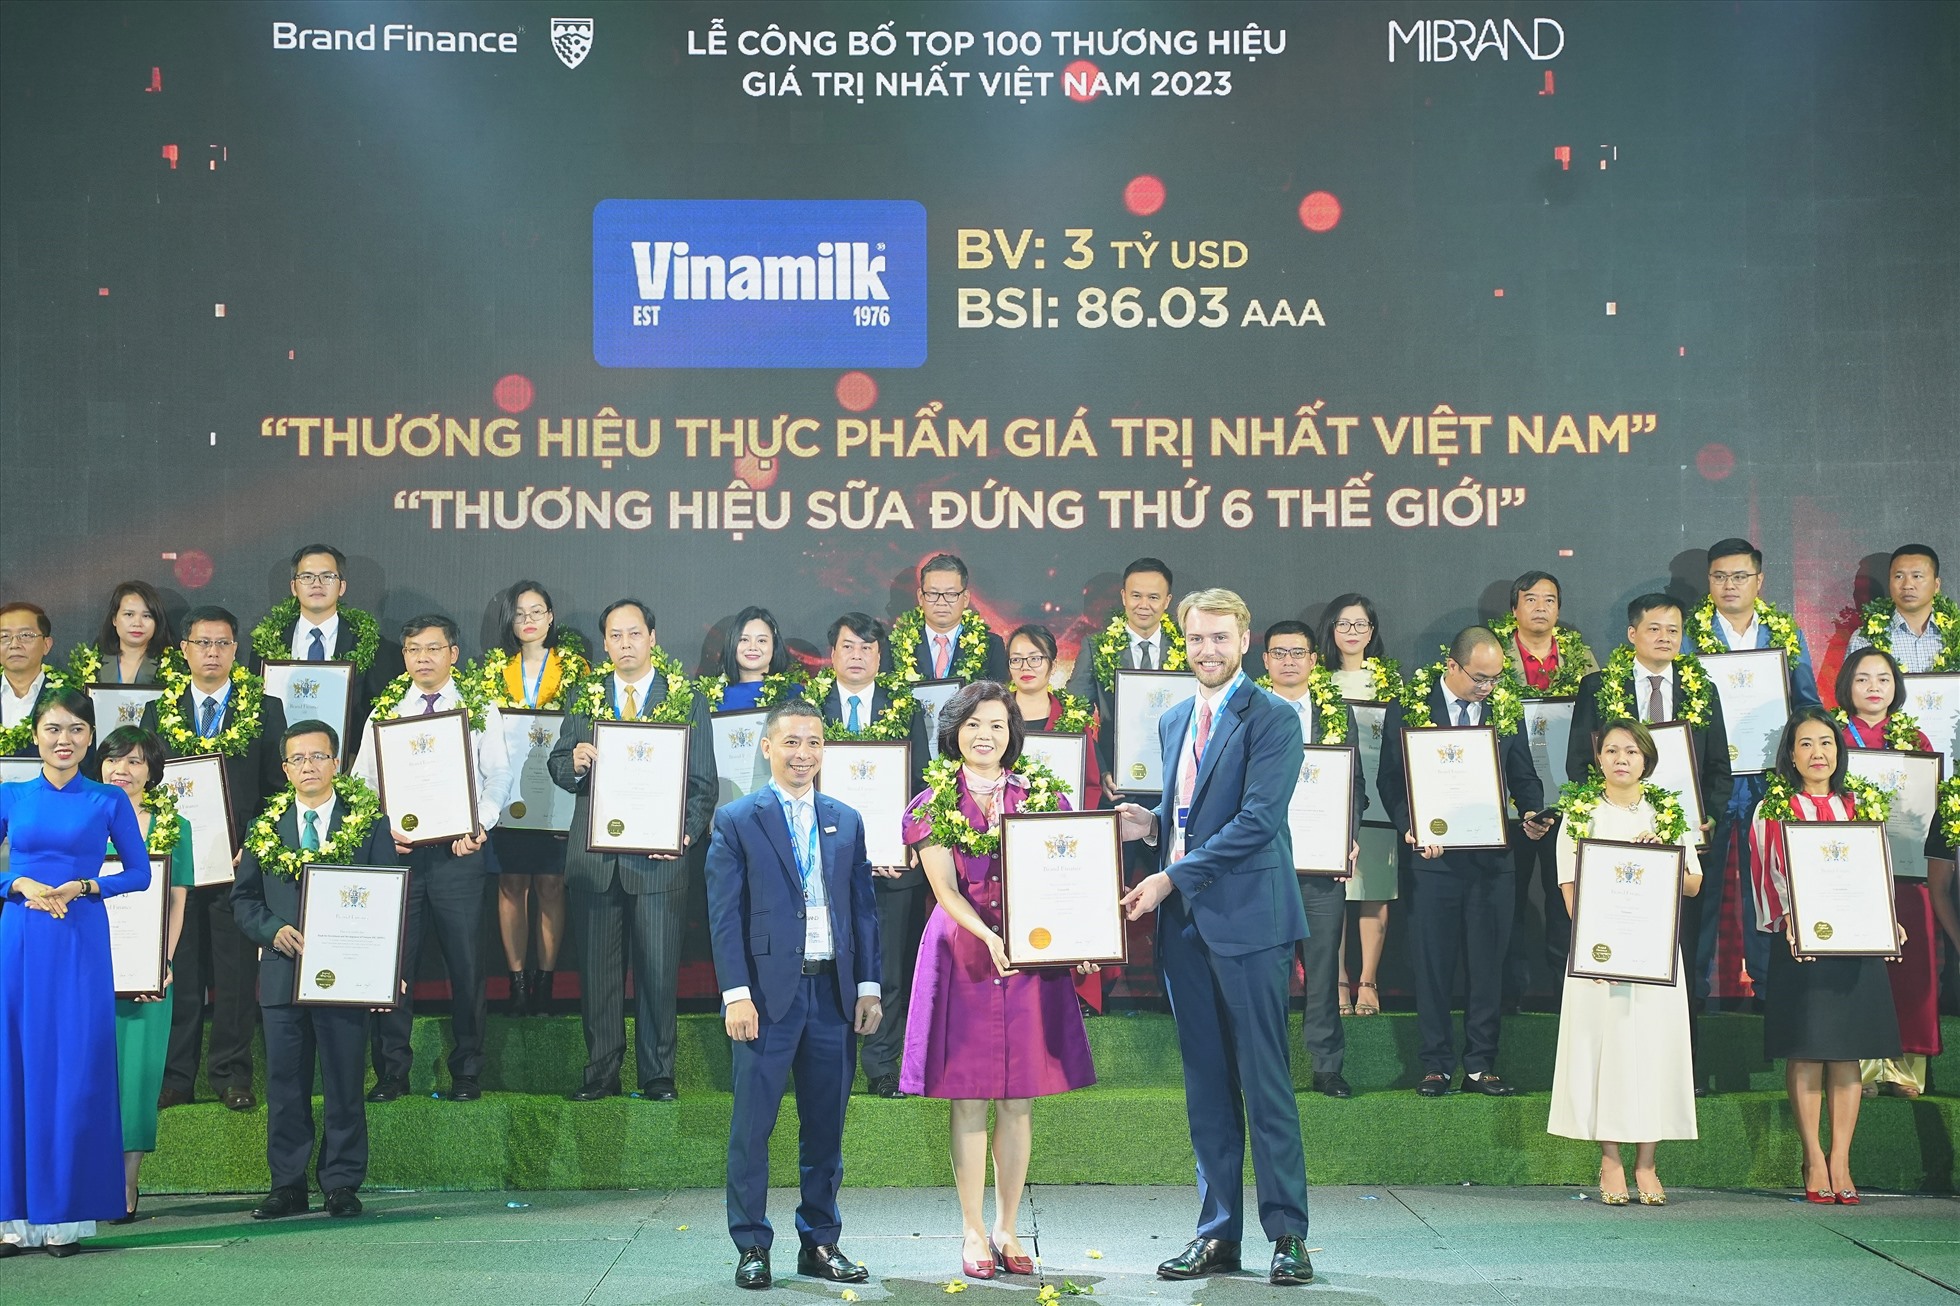 Bà Bùi Thị Hương, Giám đốc Điều hành, đại diện Vinamilk đón nhận các chứng nhận từ Brand Finance. Ảnh:  Mibrand